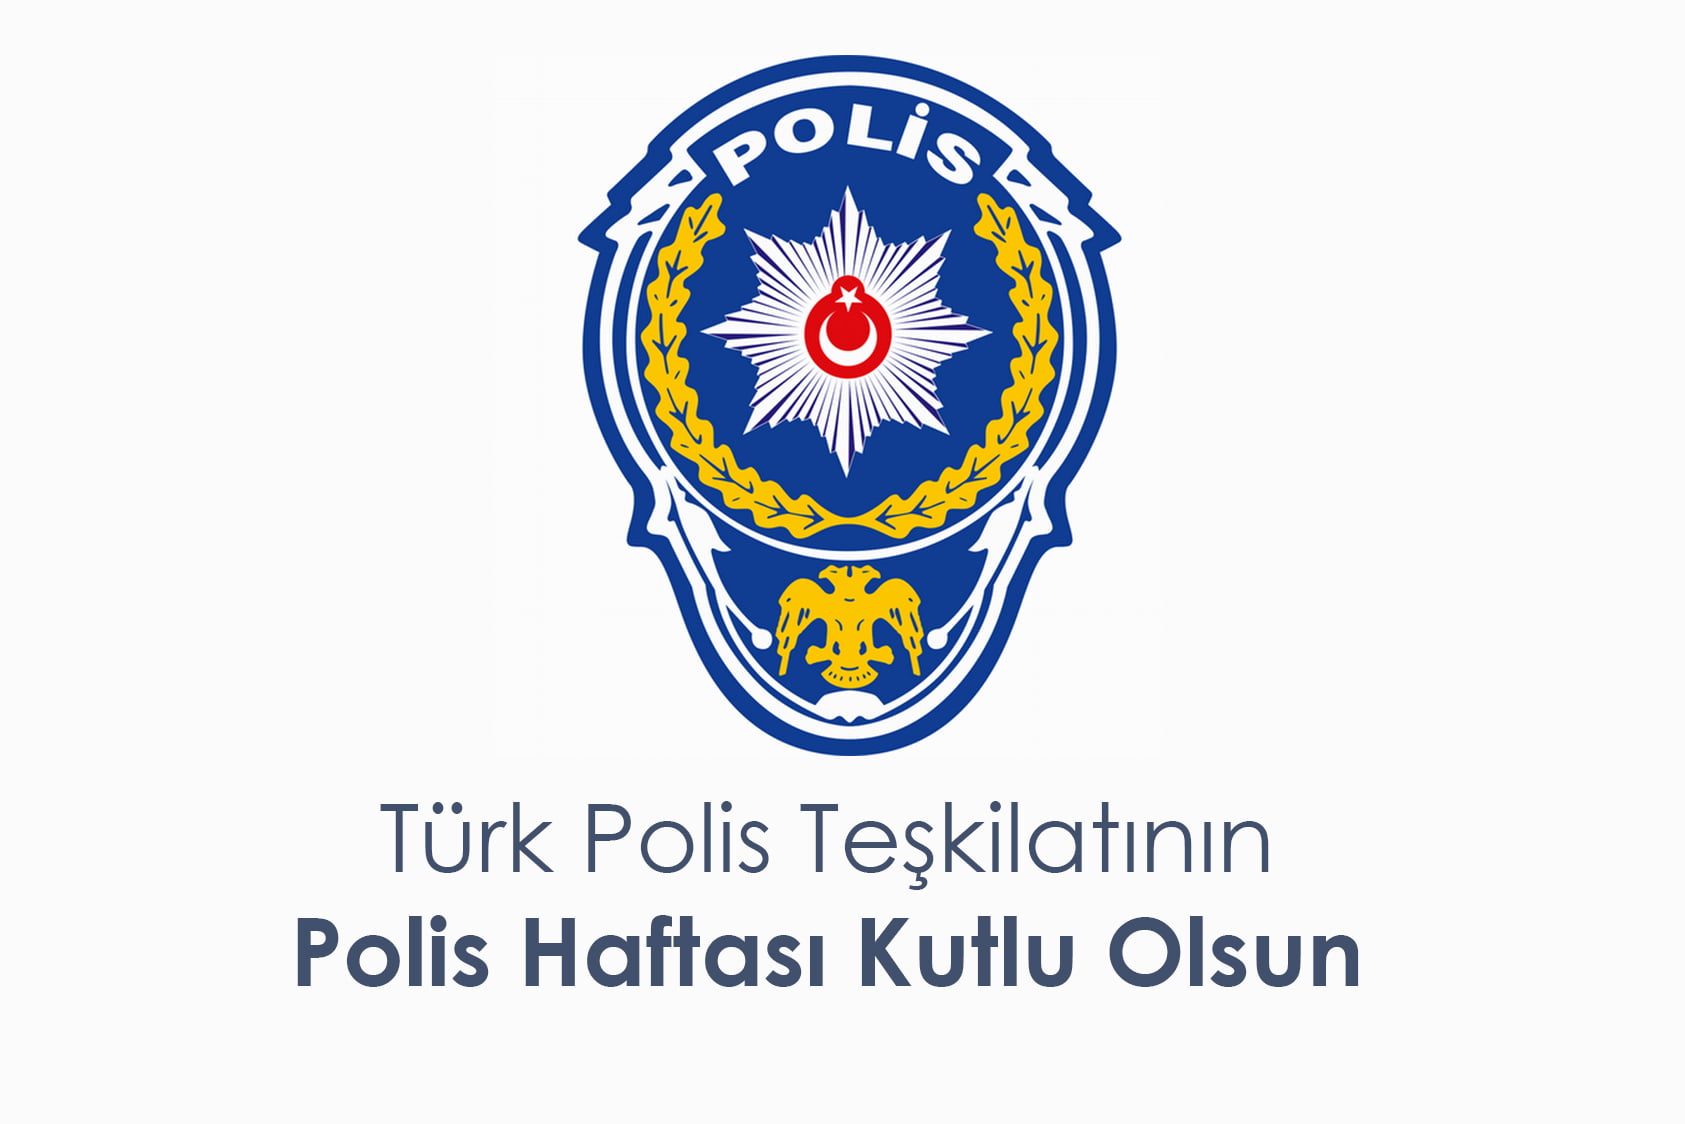 Türk Polis Teşkilatı 174 Yaşında